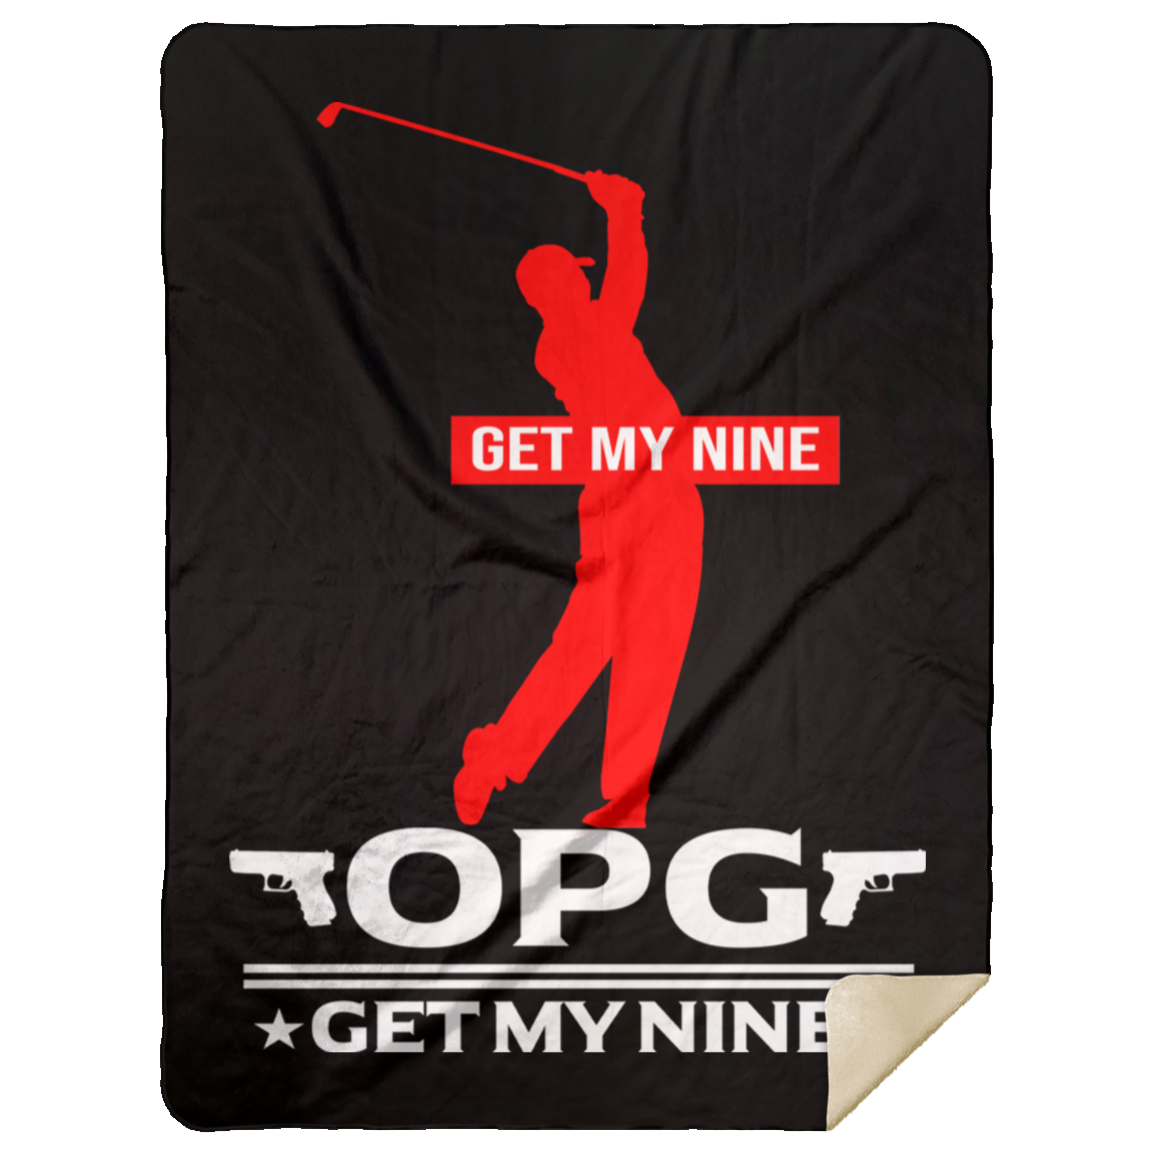 OPG Custom Design #16. Get My Nine. Male Version. Premium Mink Sherpa Blanket 60x80